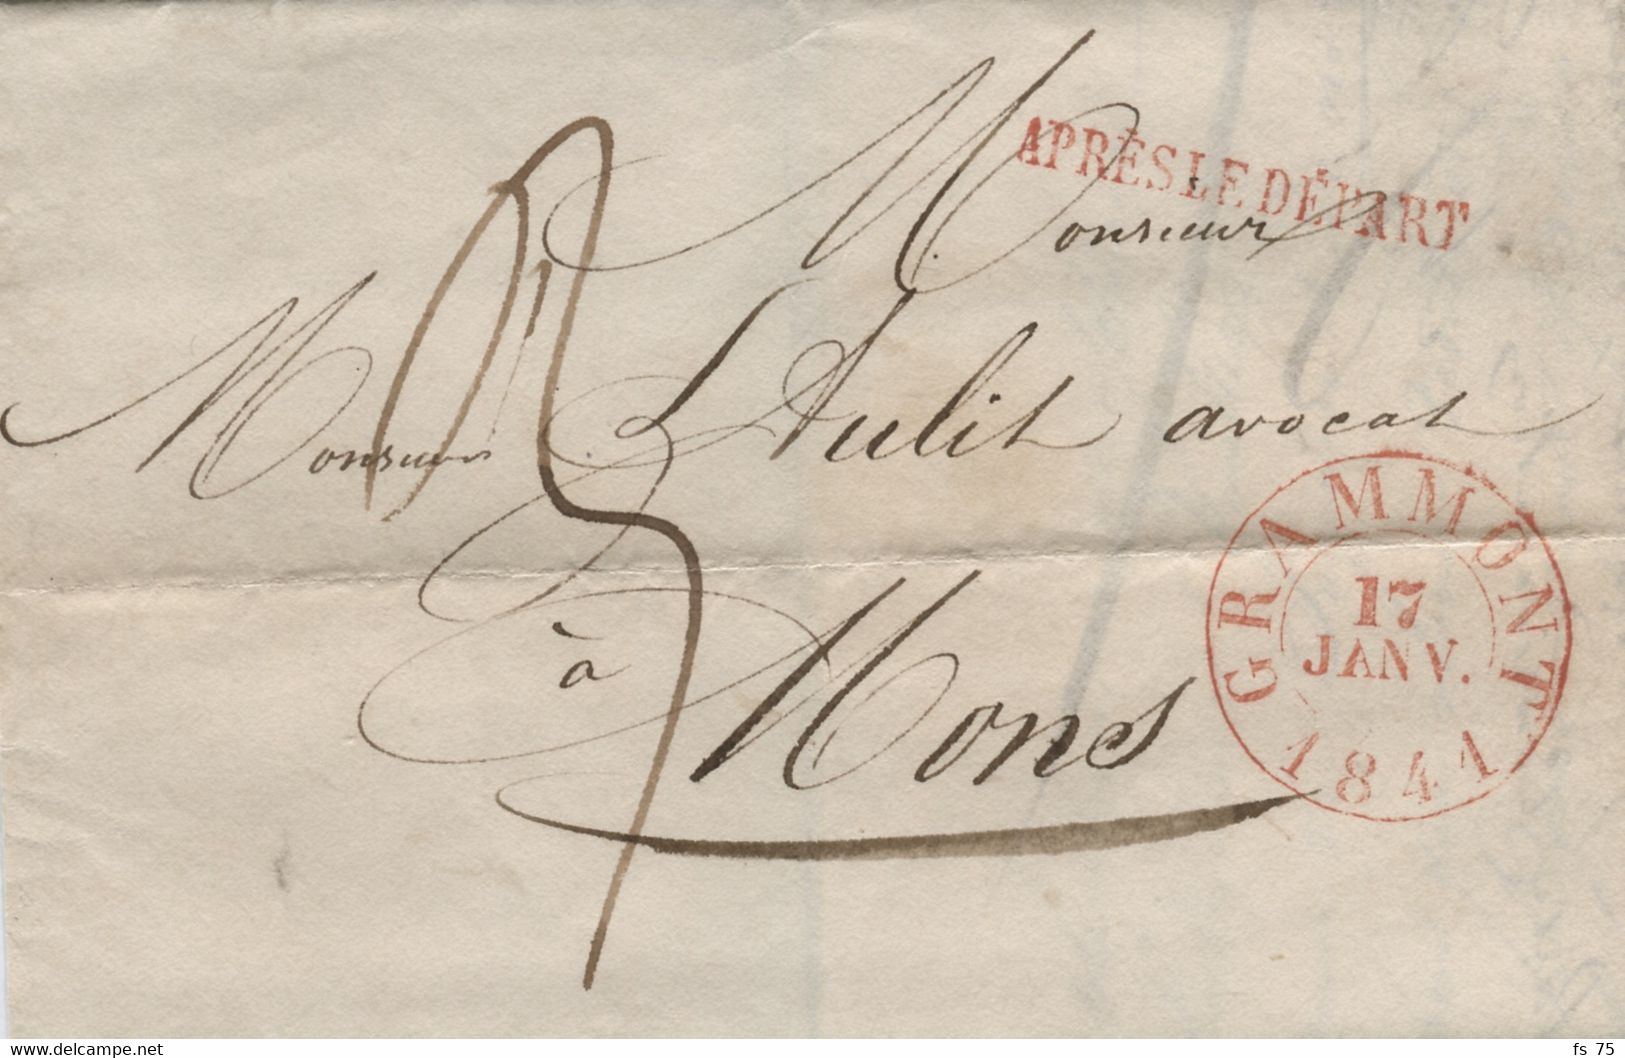 BELGIQUE - GRAMMONT + APRES LE DEPART SUR LETTRE SANS CORRESPONDANCE, 1841 - 1830-1849 (Belgique Indépendante)